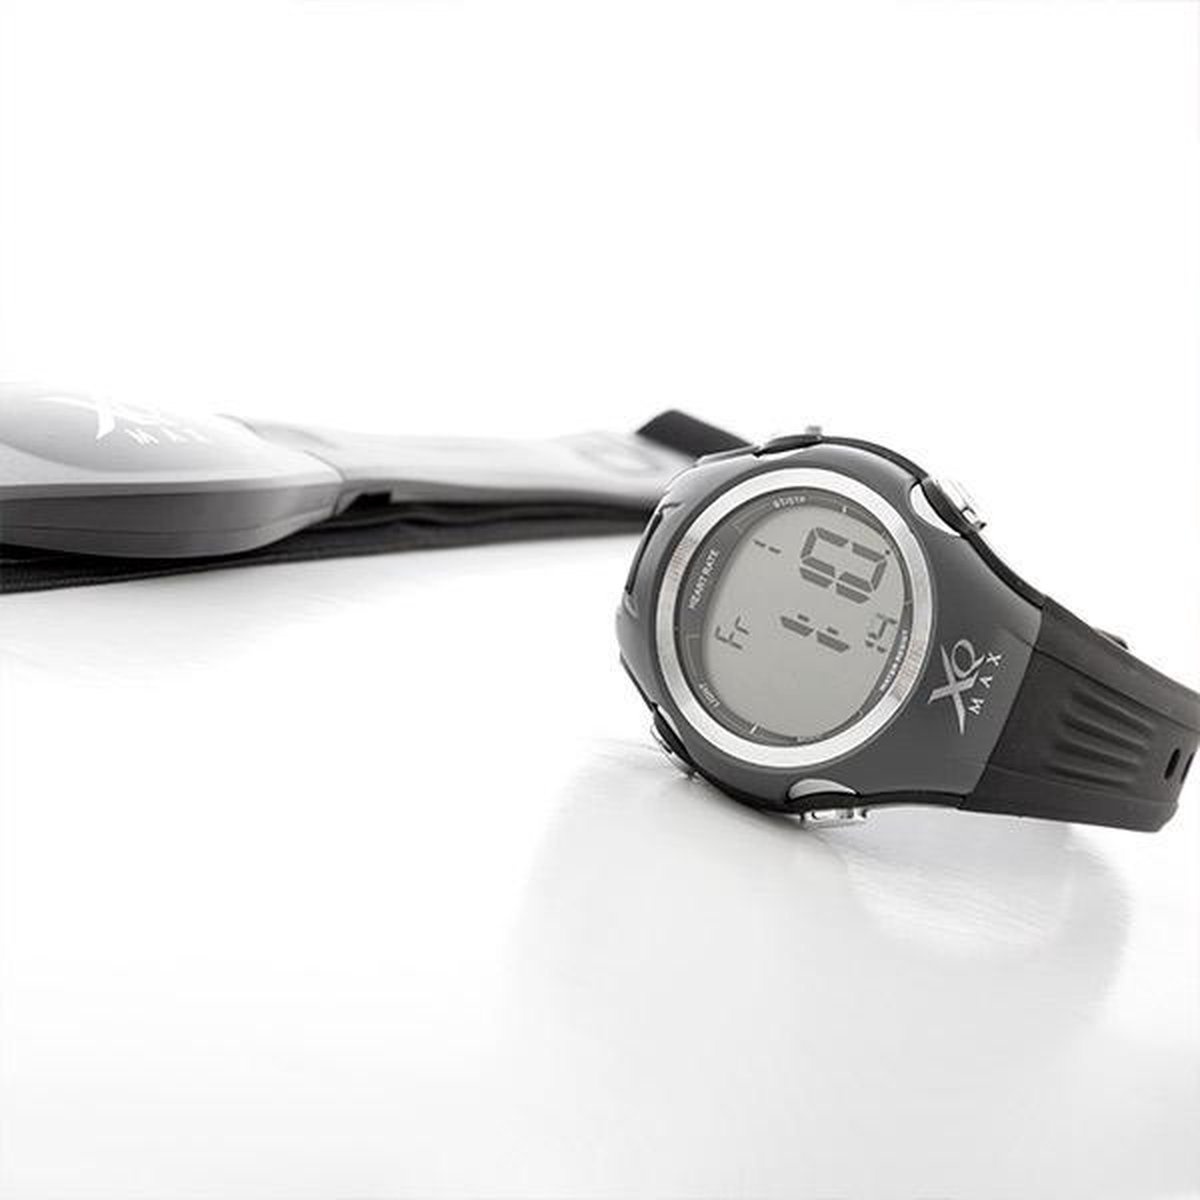 Der andere günstig Kaufen-XQ Max Watch Herzfrequenzmesser mit Brustgurt - Schwarz. XQ Max Watch Herzfrequenzmesser mit Brustgurt - Schwarz <![CDATA[XQ Max Watch Herzfrequenzmesser mit Brustgurt. Wenn Sie laufen, Rad fahren oder andere sportliche Aktivitäten ausüben, ist es nütz